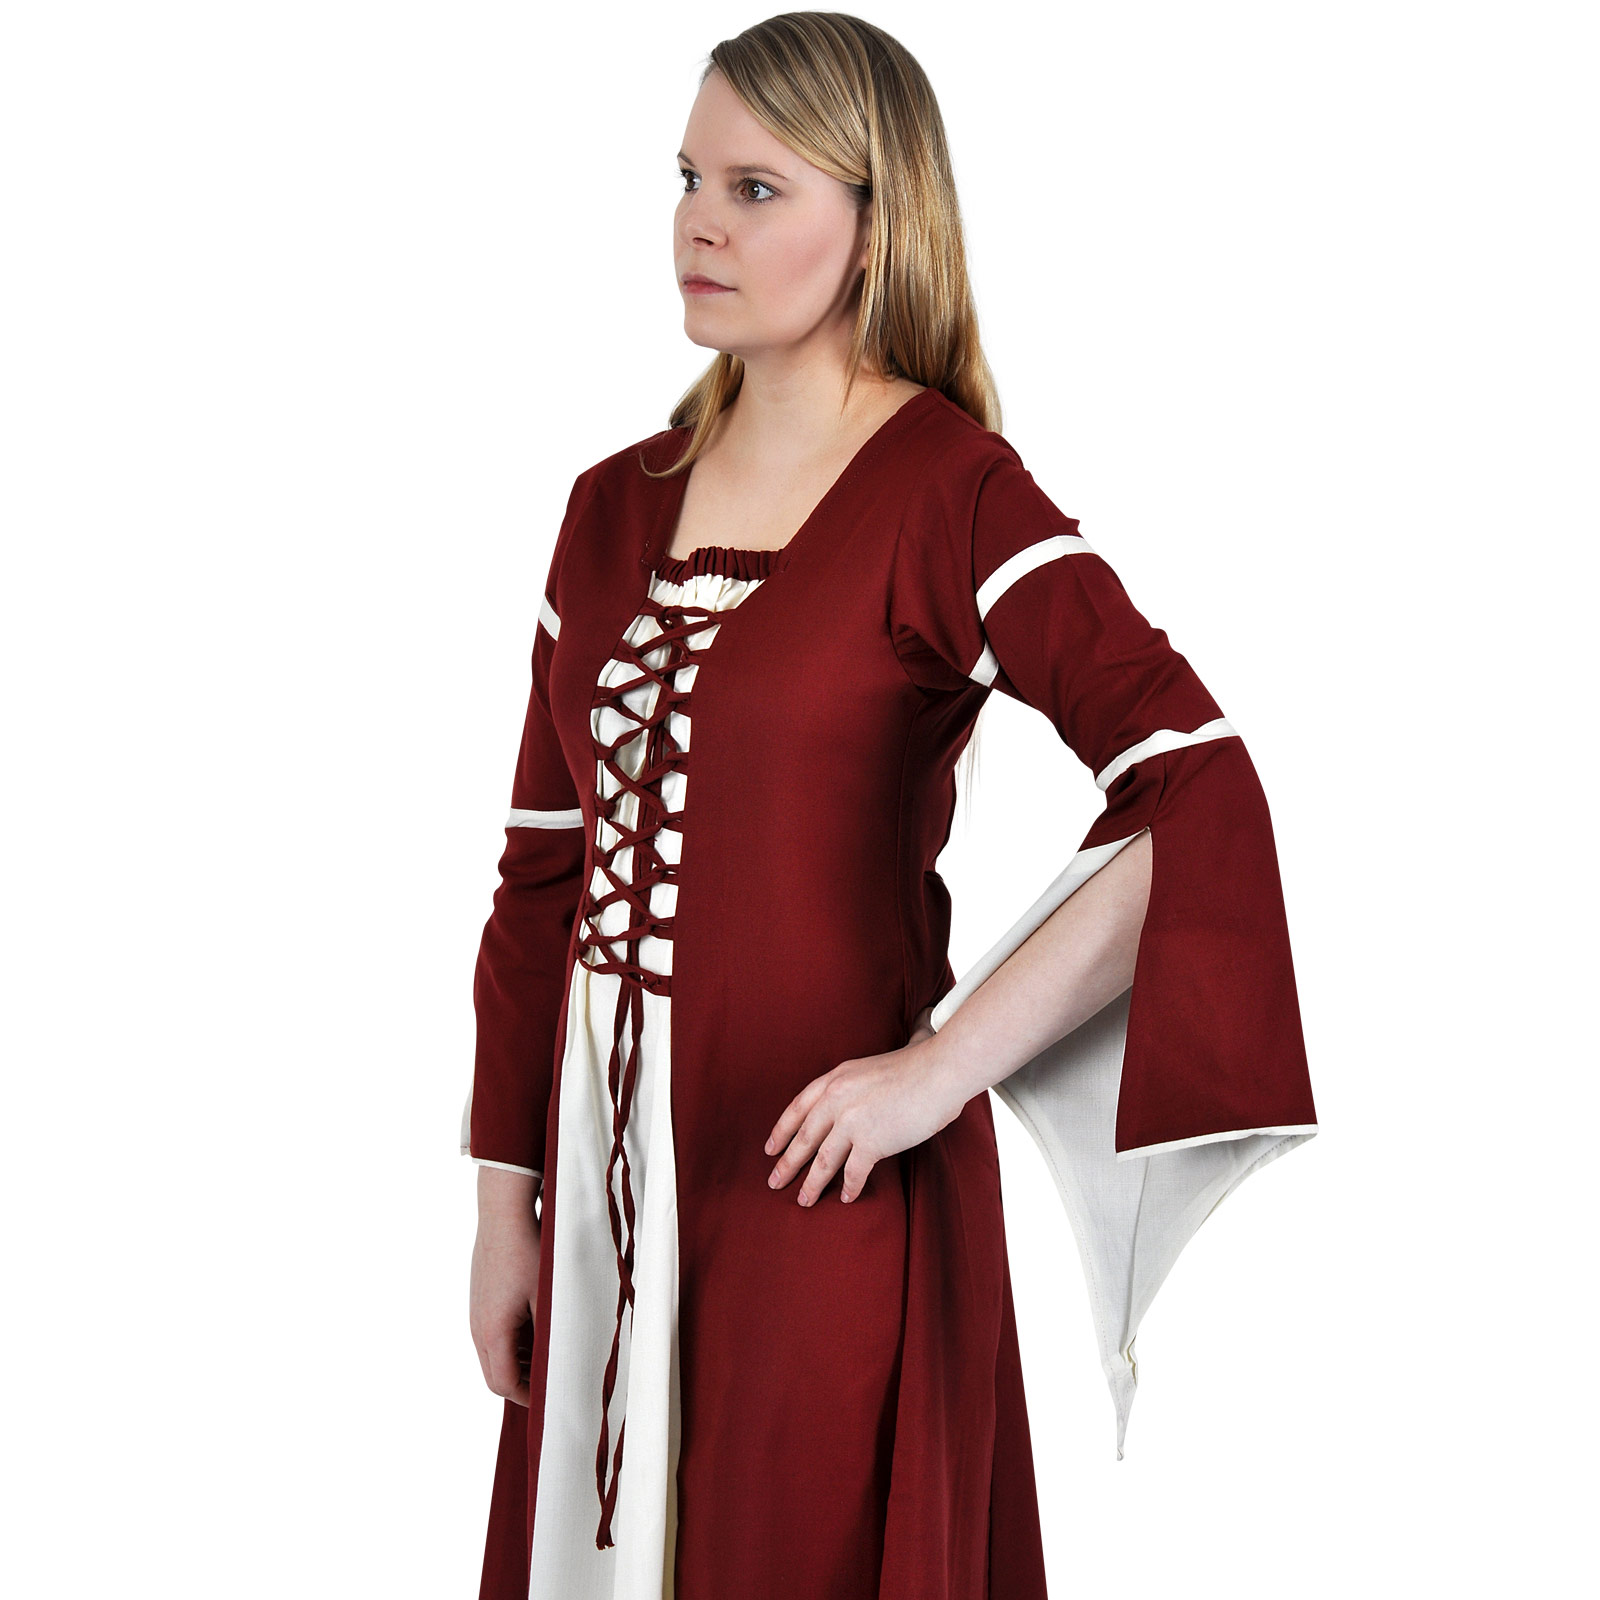 Mittelalter Kleid Katherina rot-natur